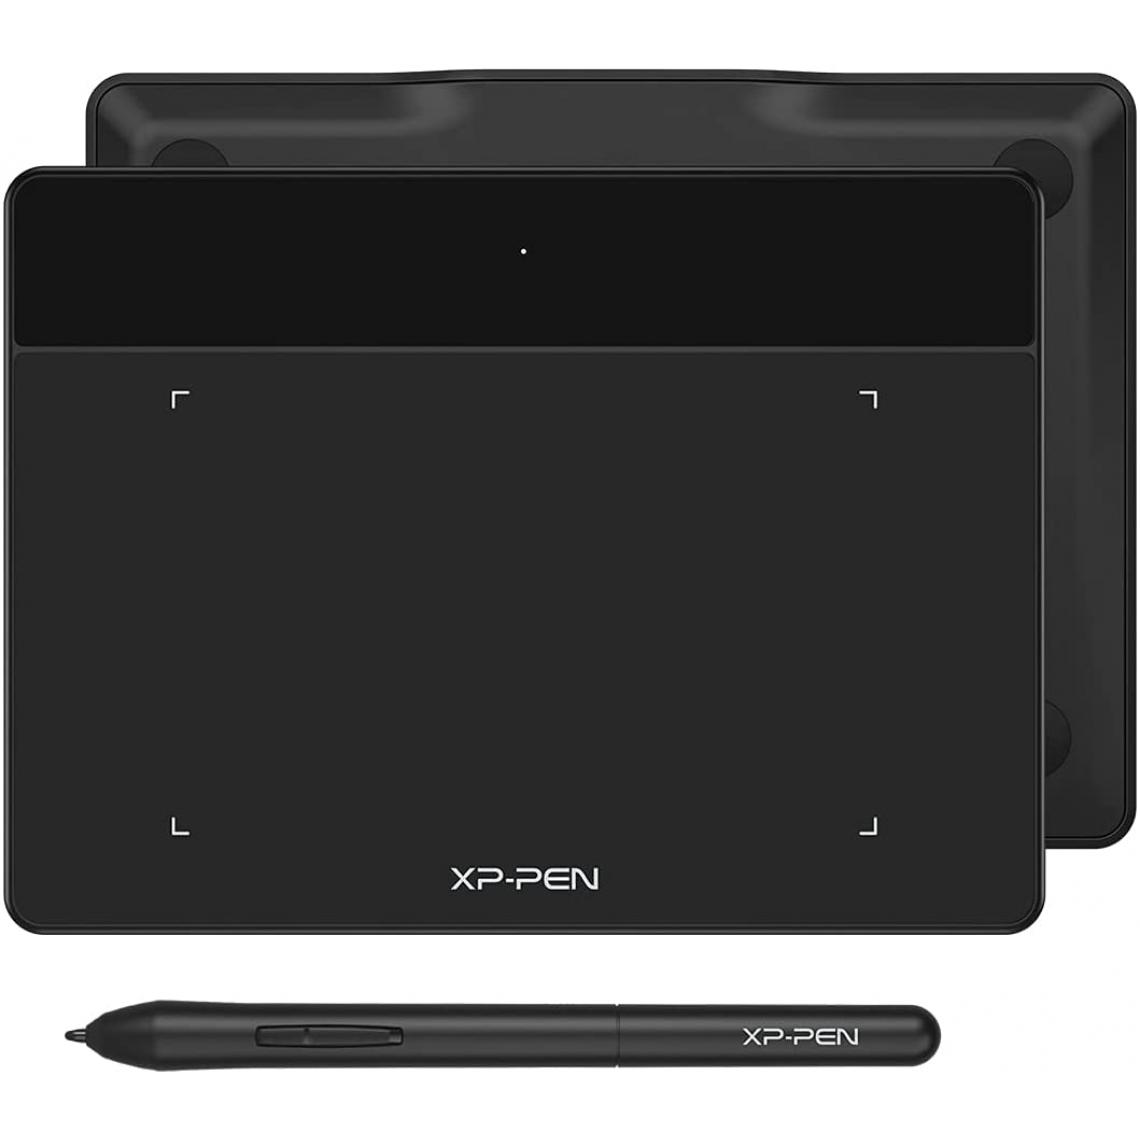 Xp-Pen - XPPen Deco Fun L Tablette Graphique 10x6 Pouces Stylet Passif à 8192 Niveaux Tablette à Stylet Compatible Mac Windows Chrome OS et Android (Noir Classique) - Tablette Graphique